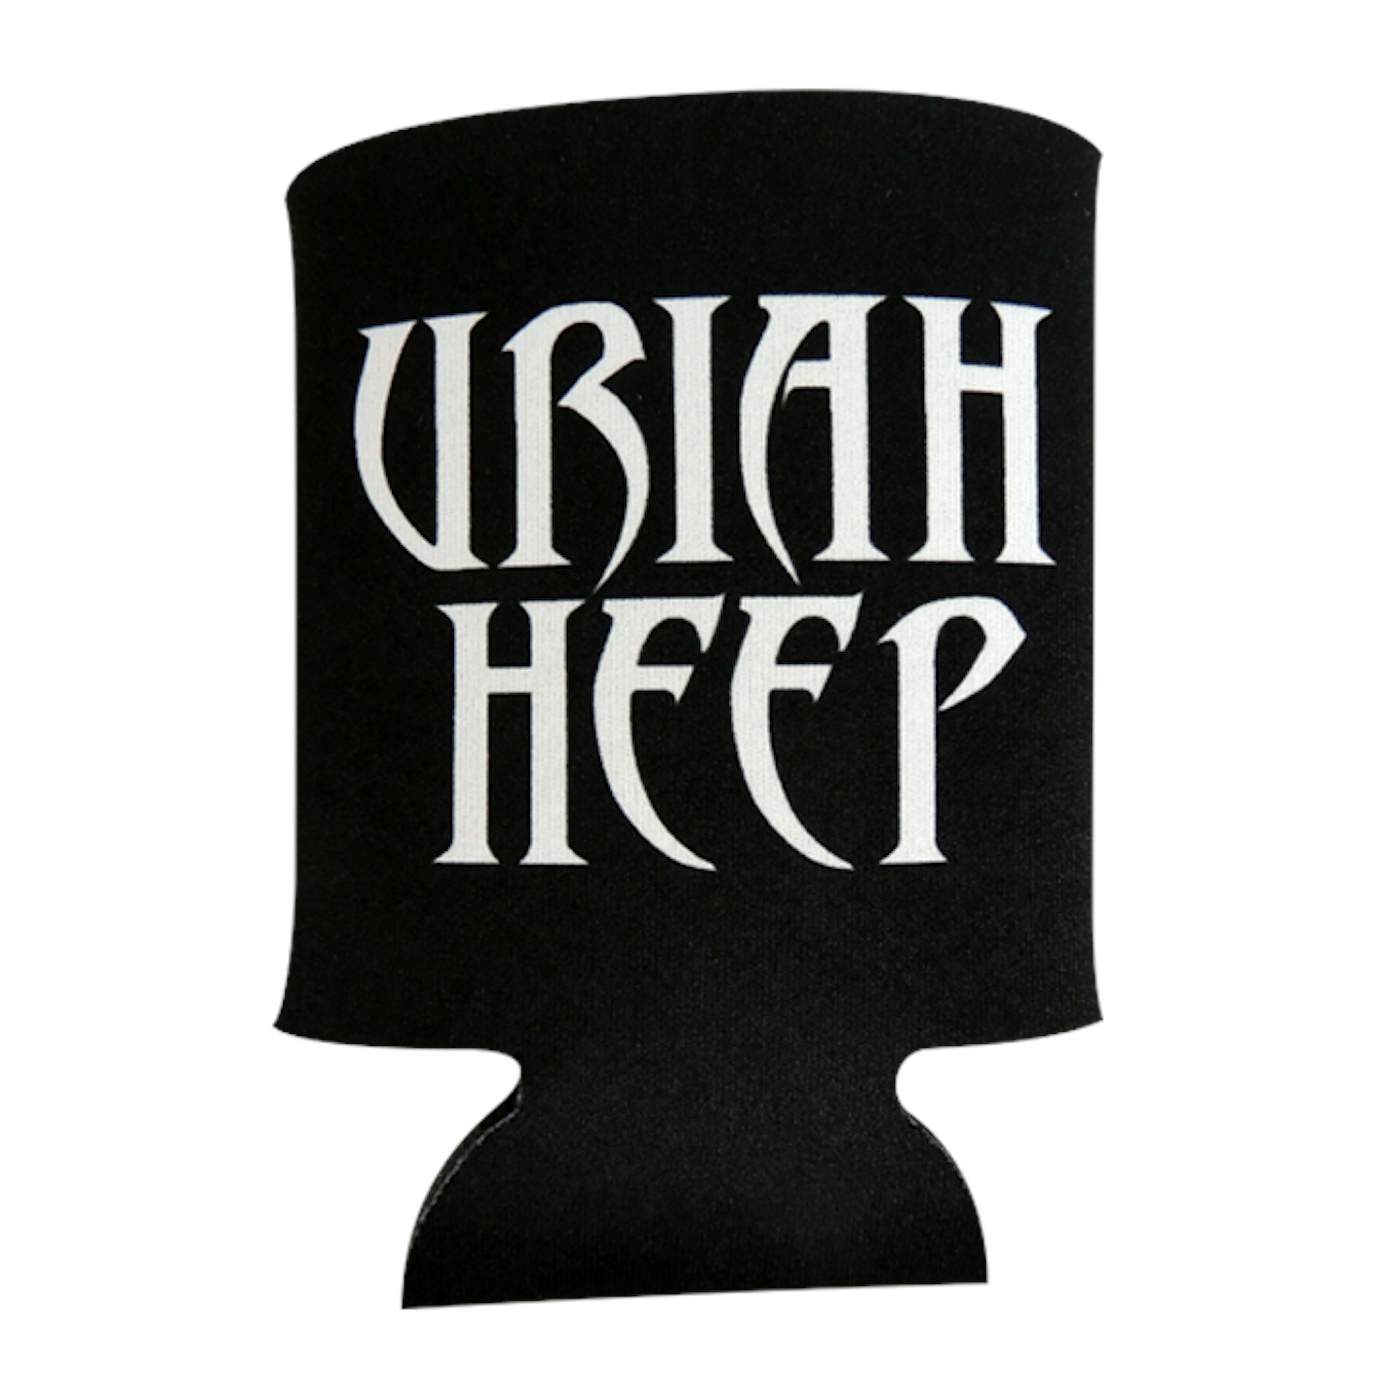 Uriah Heep "Band Logo" Can Cooler